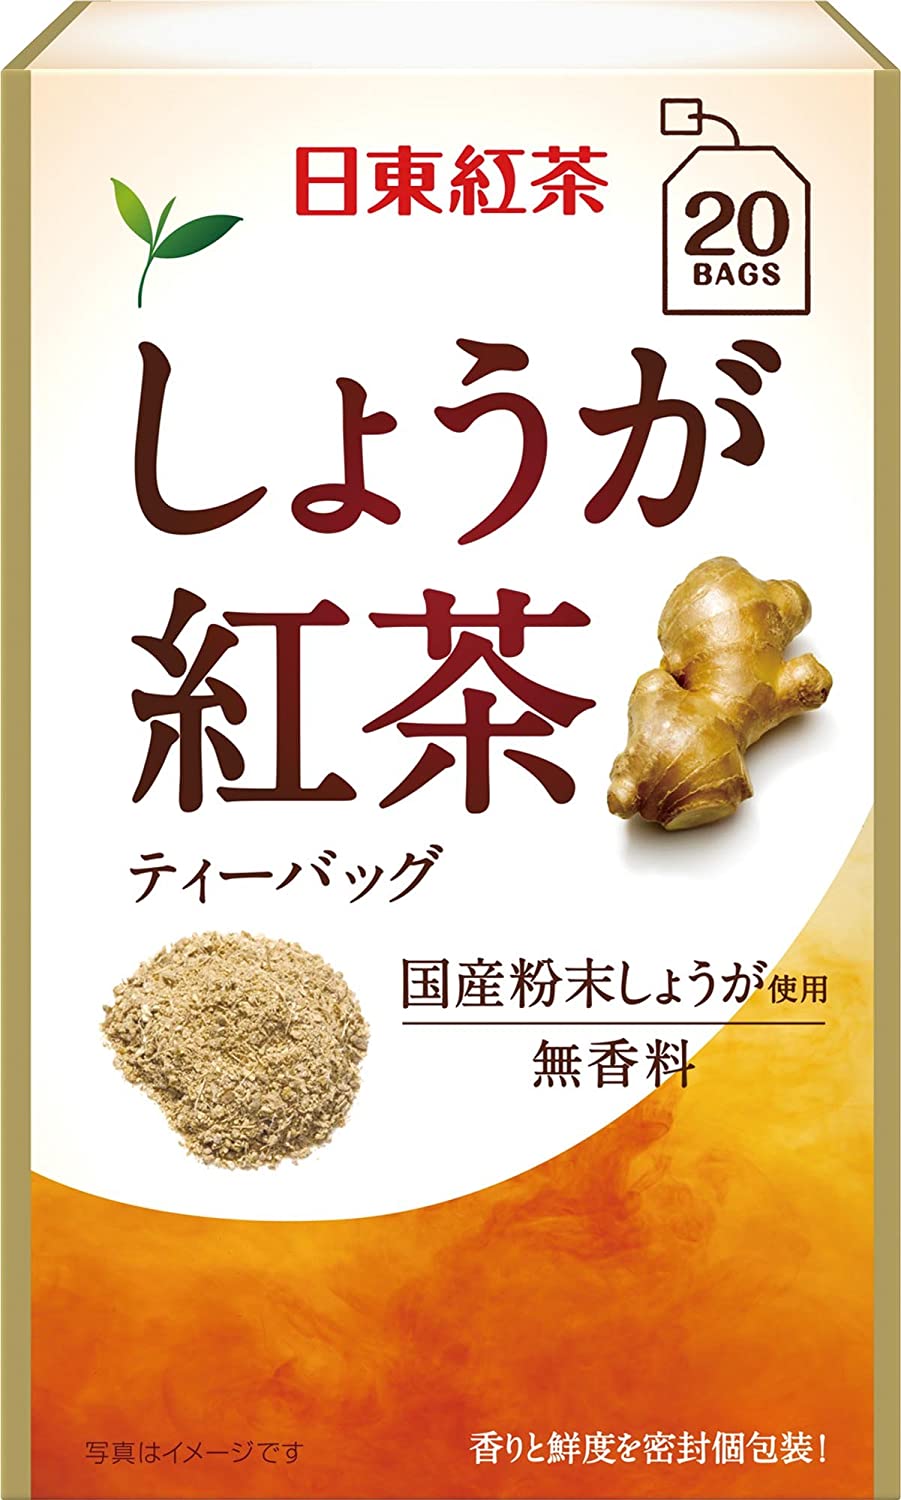 Black Ginger Tea Tea Bags 20P by Nittoh Tea - NihonMura